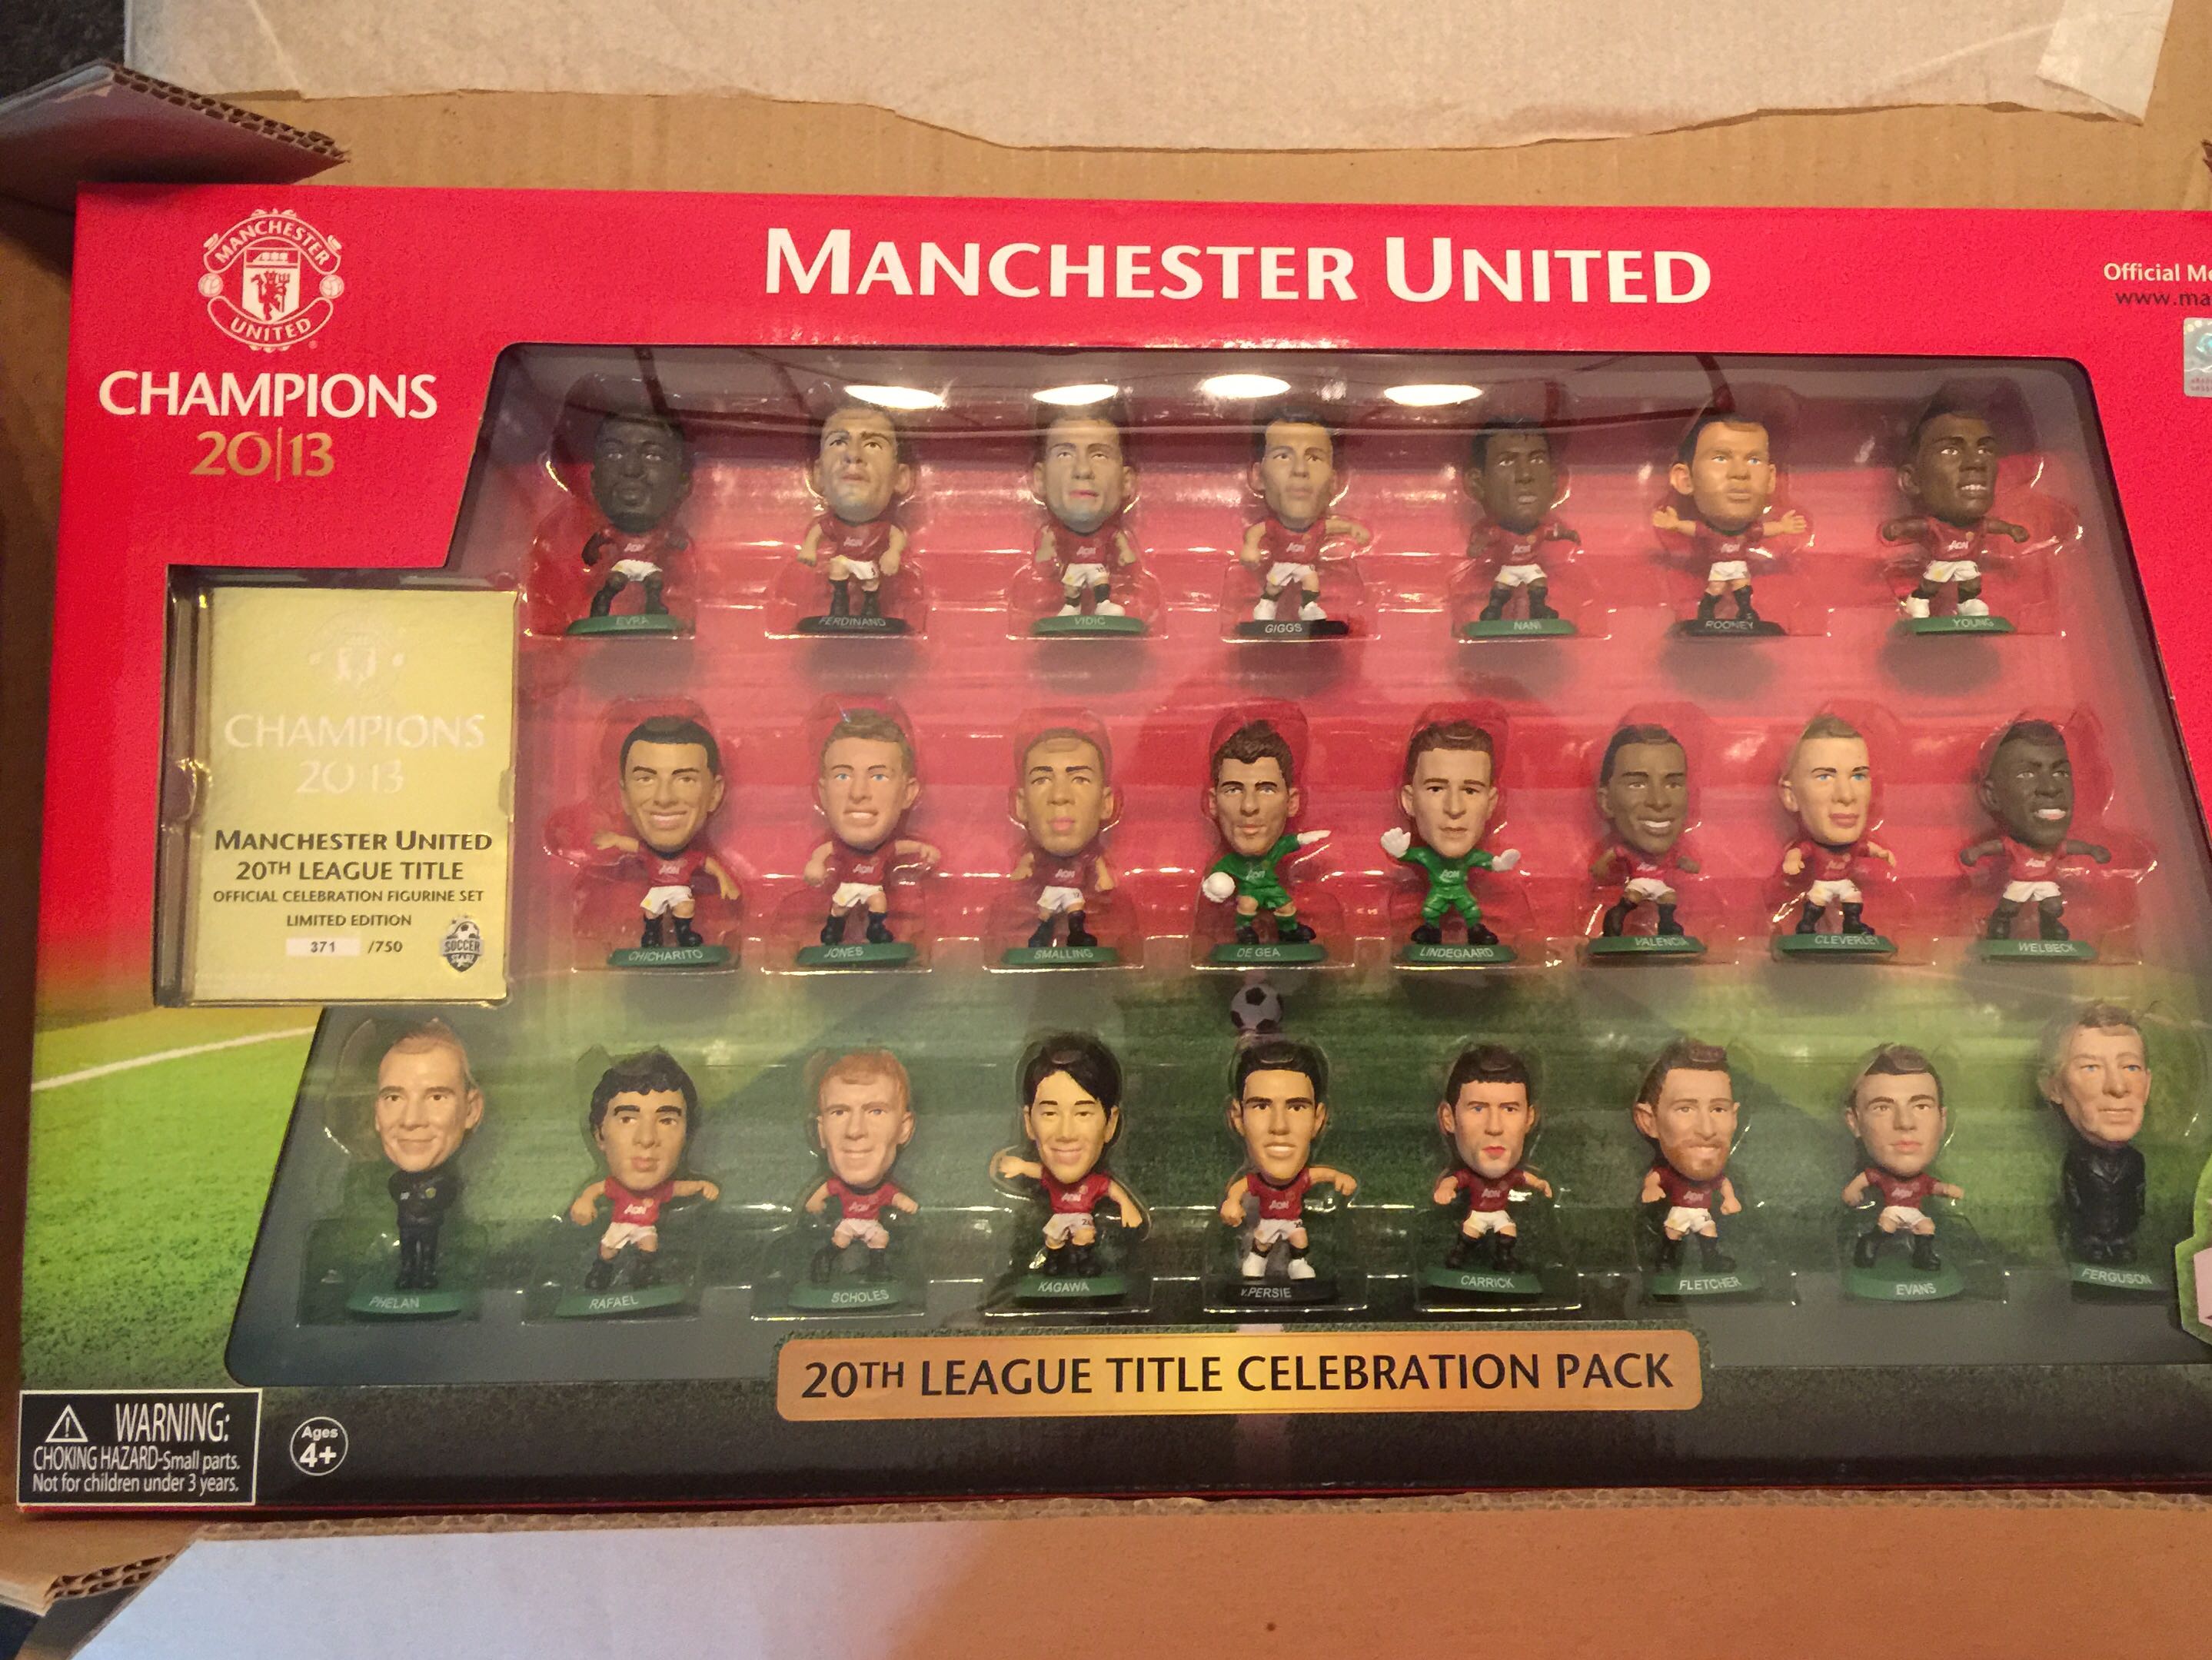 Soccerstarz] Manchester United Team Pack 16-17